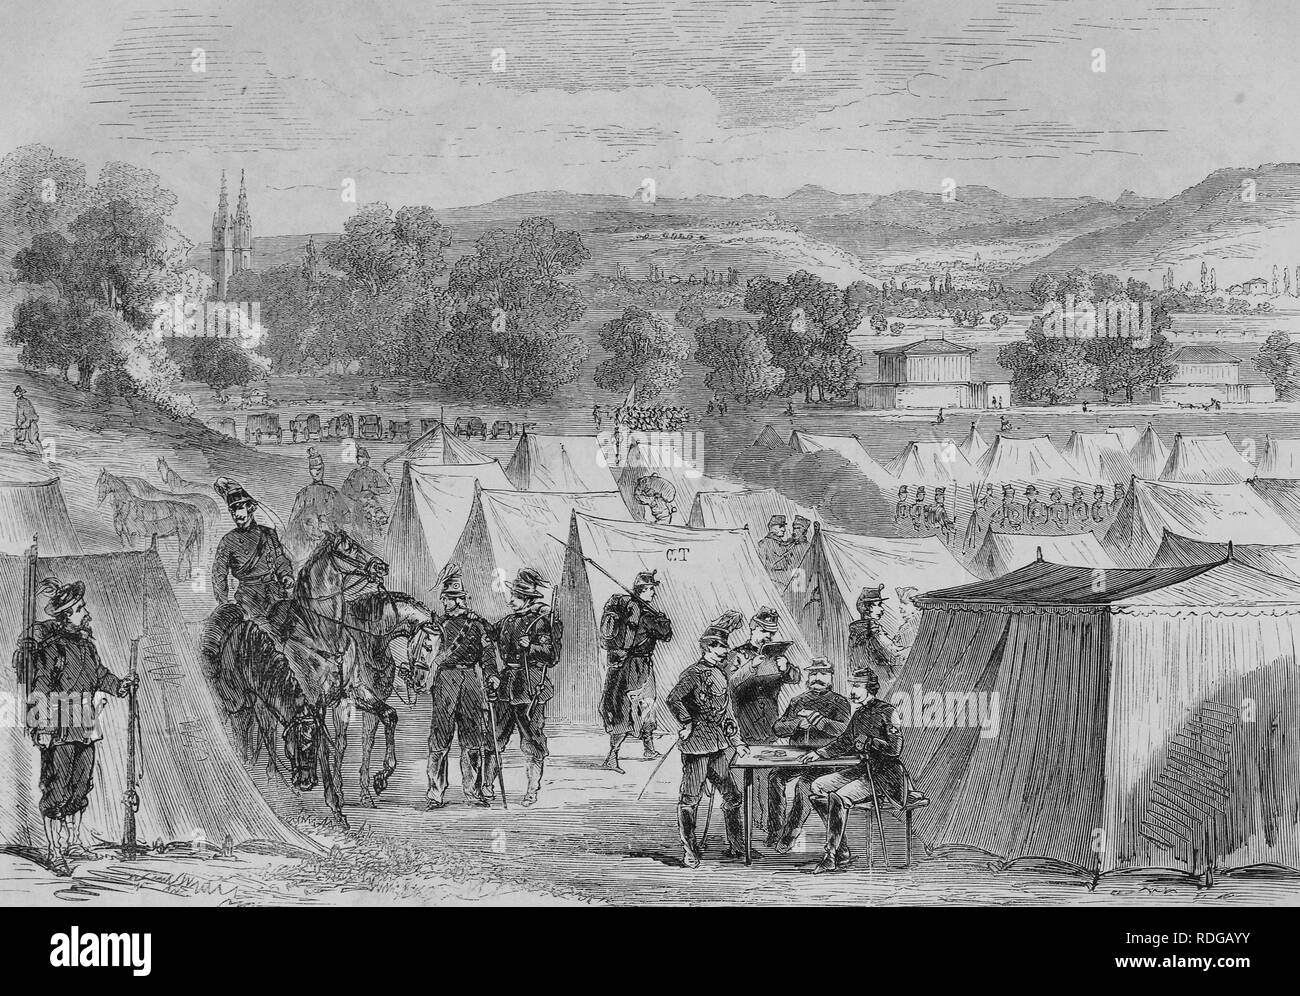 Camp suisse sur la colline du Bruderholz de Bâle, illustration historique, illustrated war chronicle 1870 à 1871 Banque D'Images